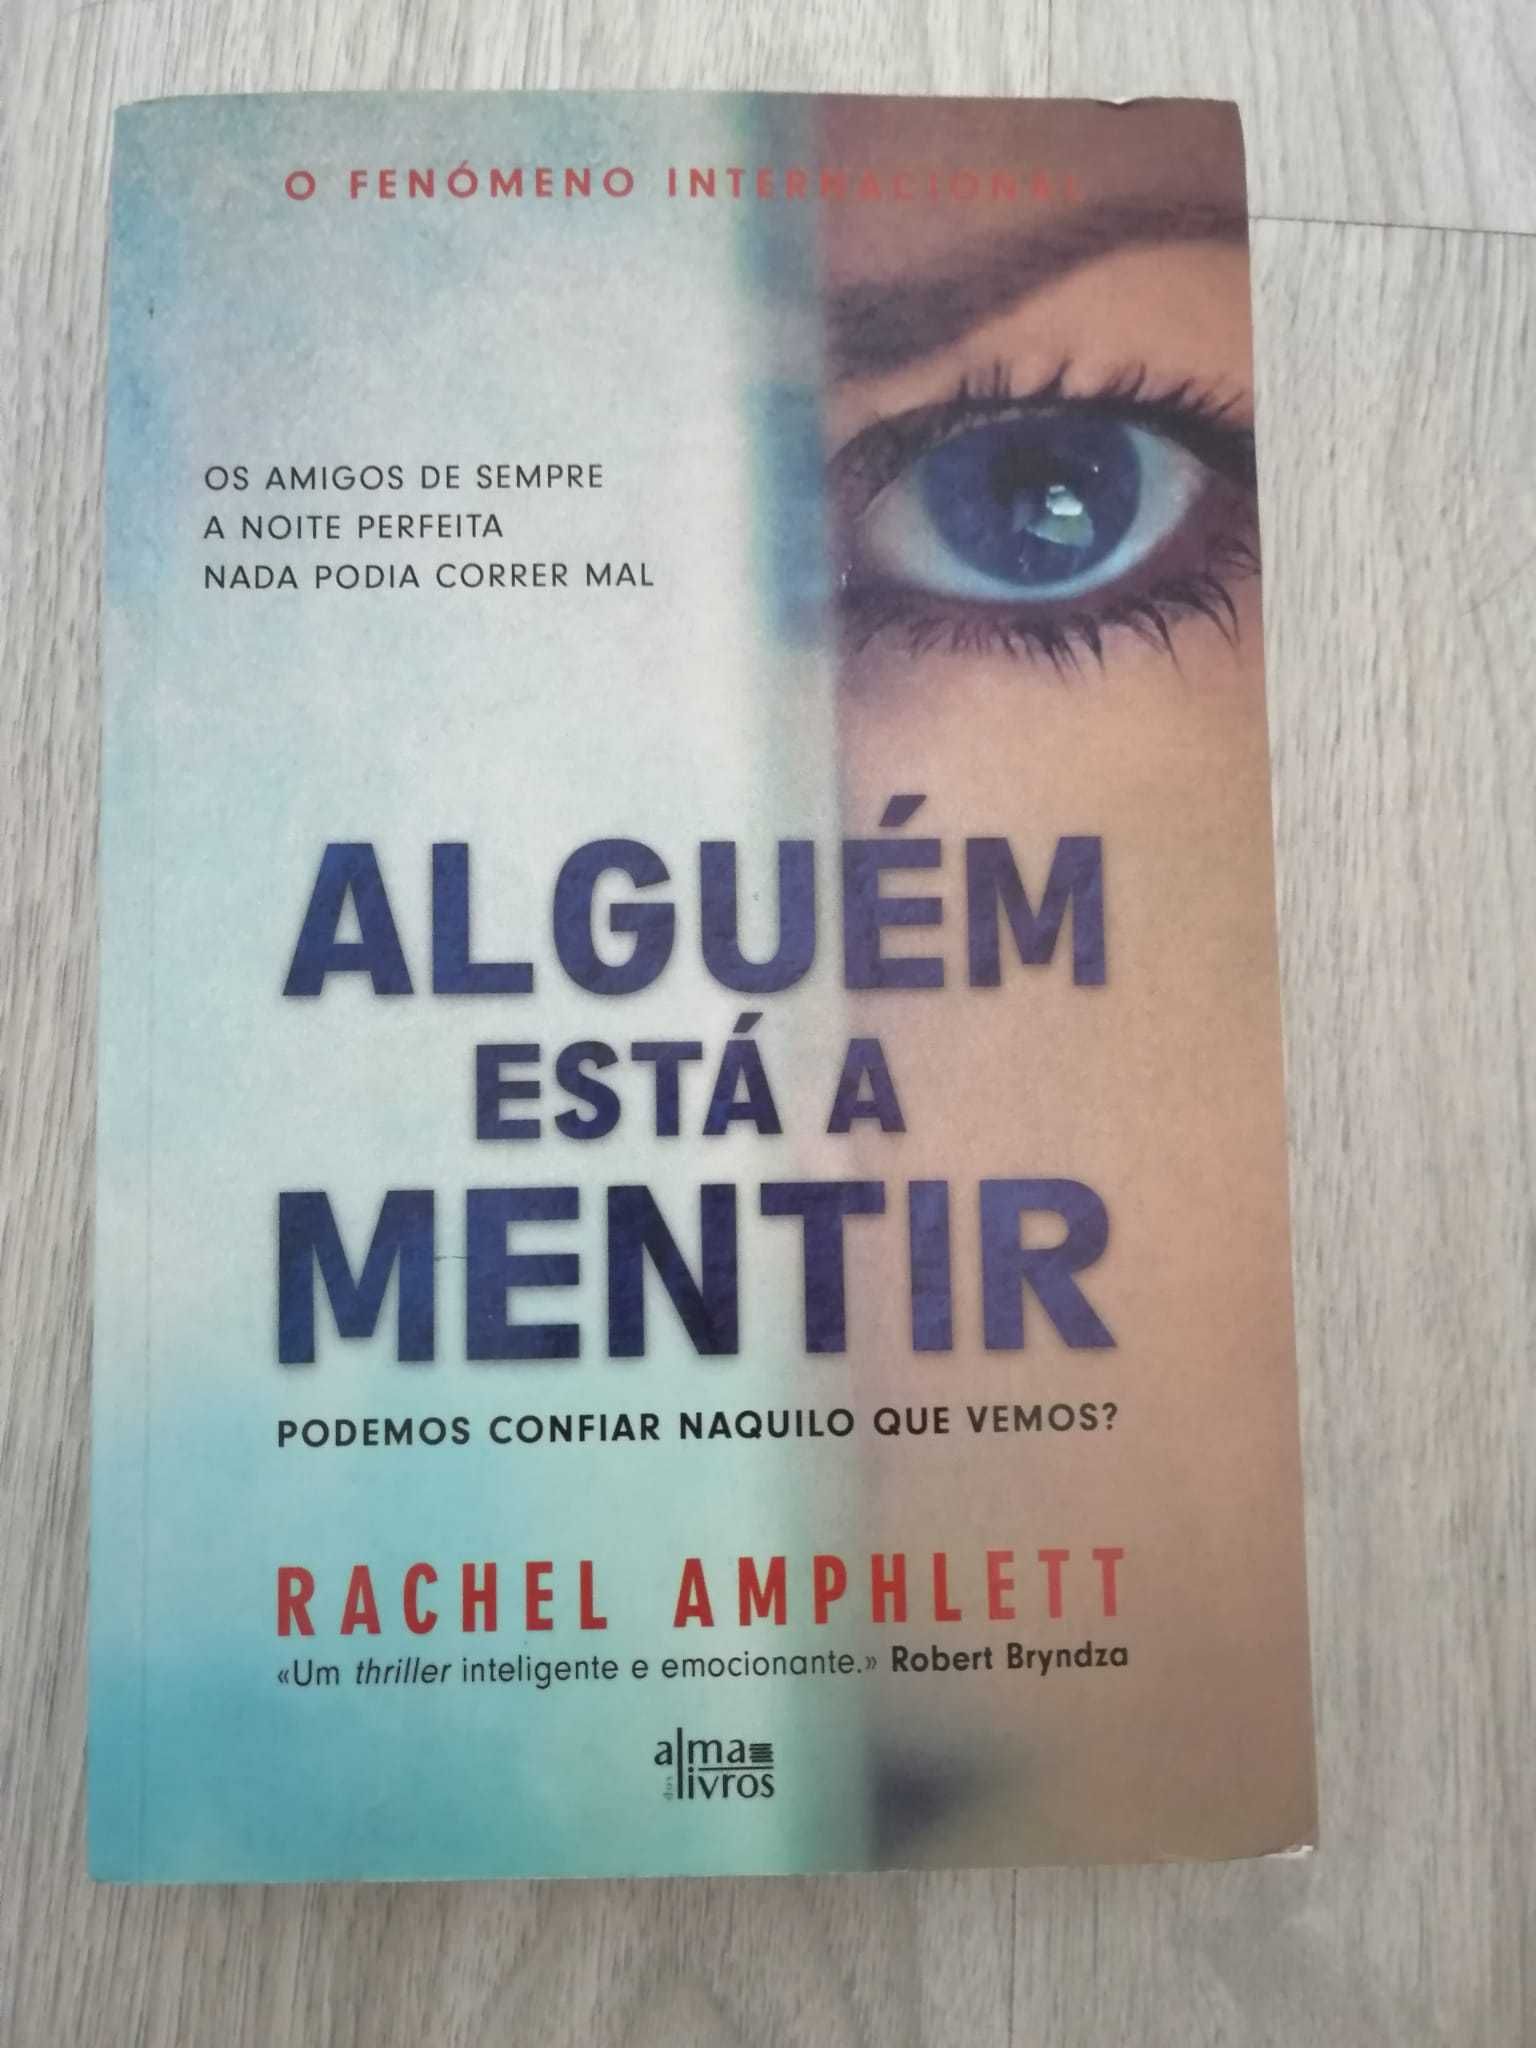 Livro "Alguém está a mentir" de Rachel Amphlett